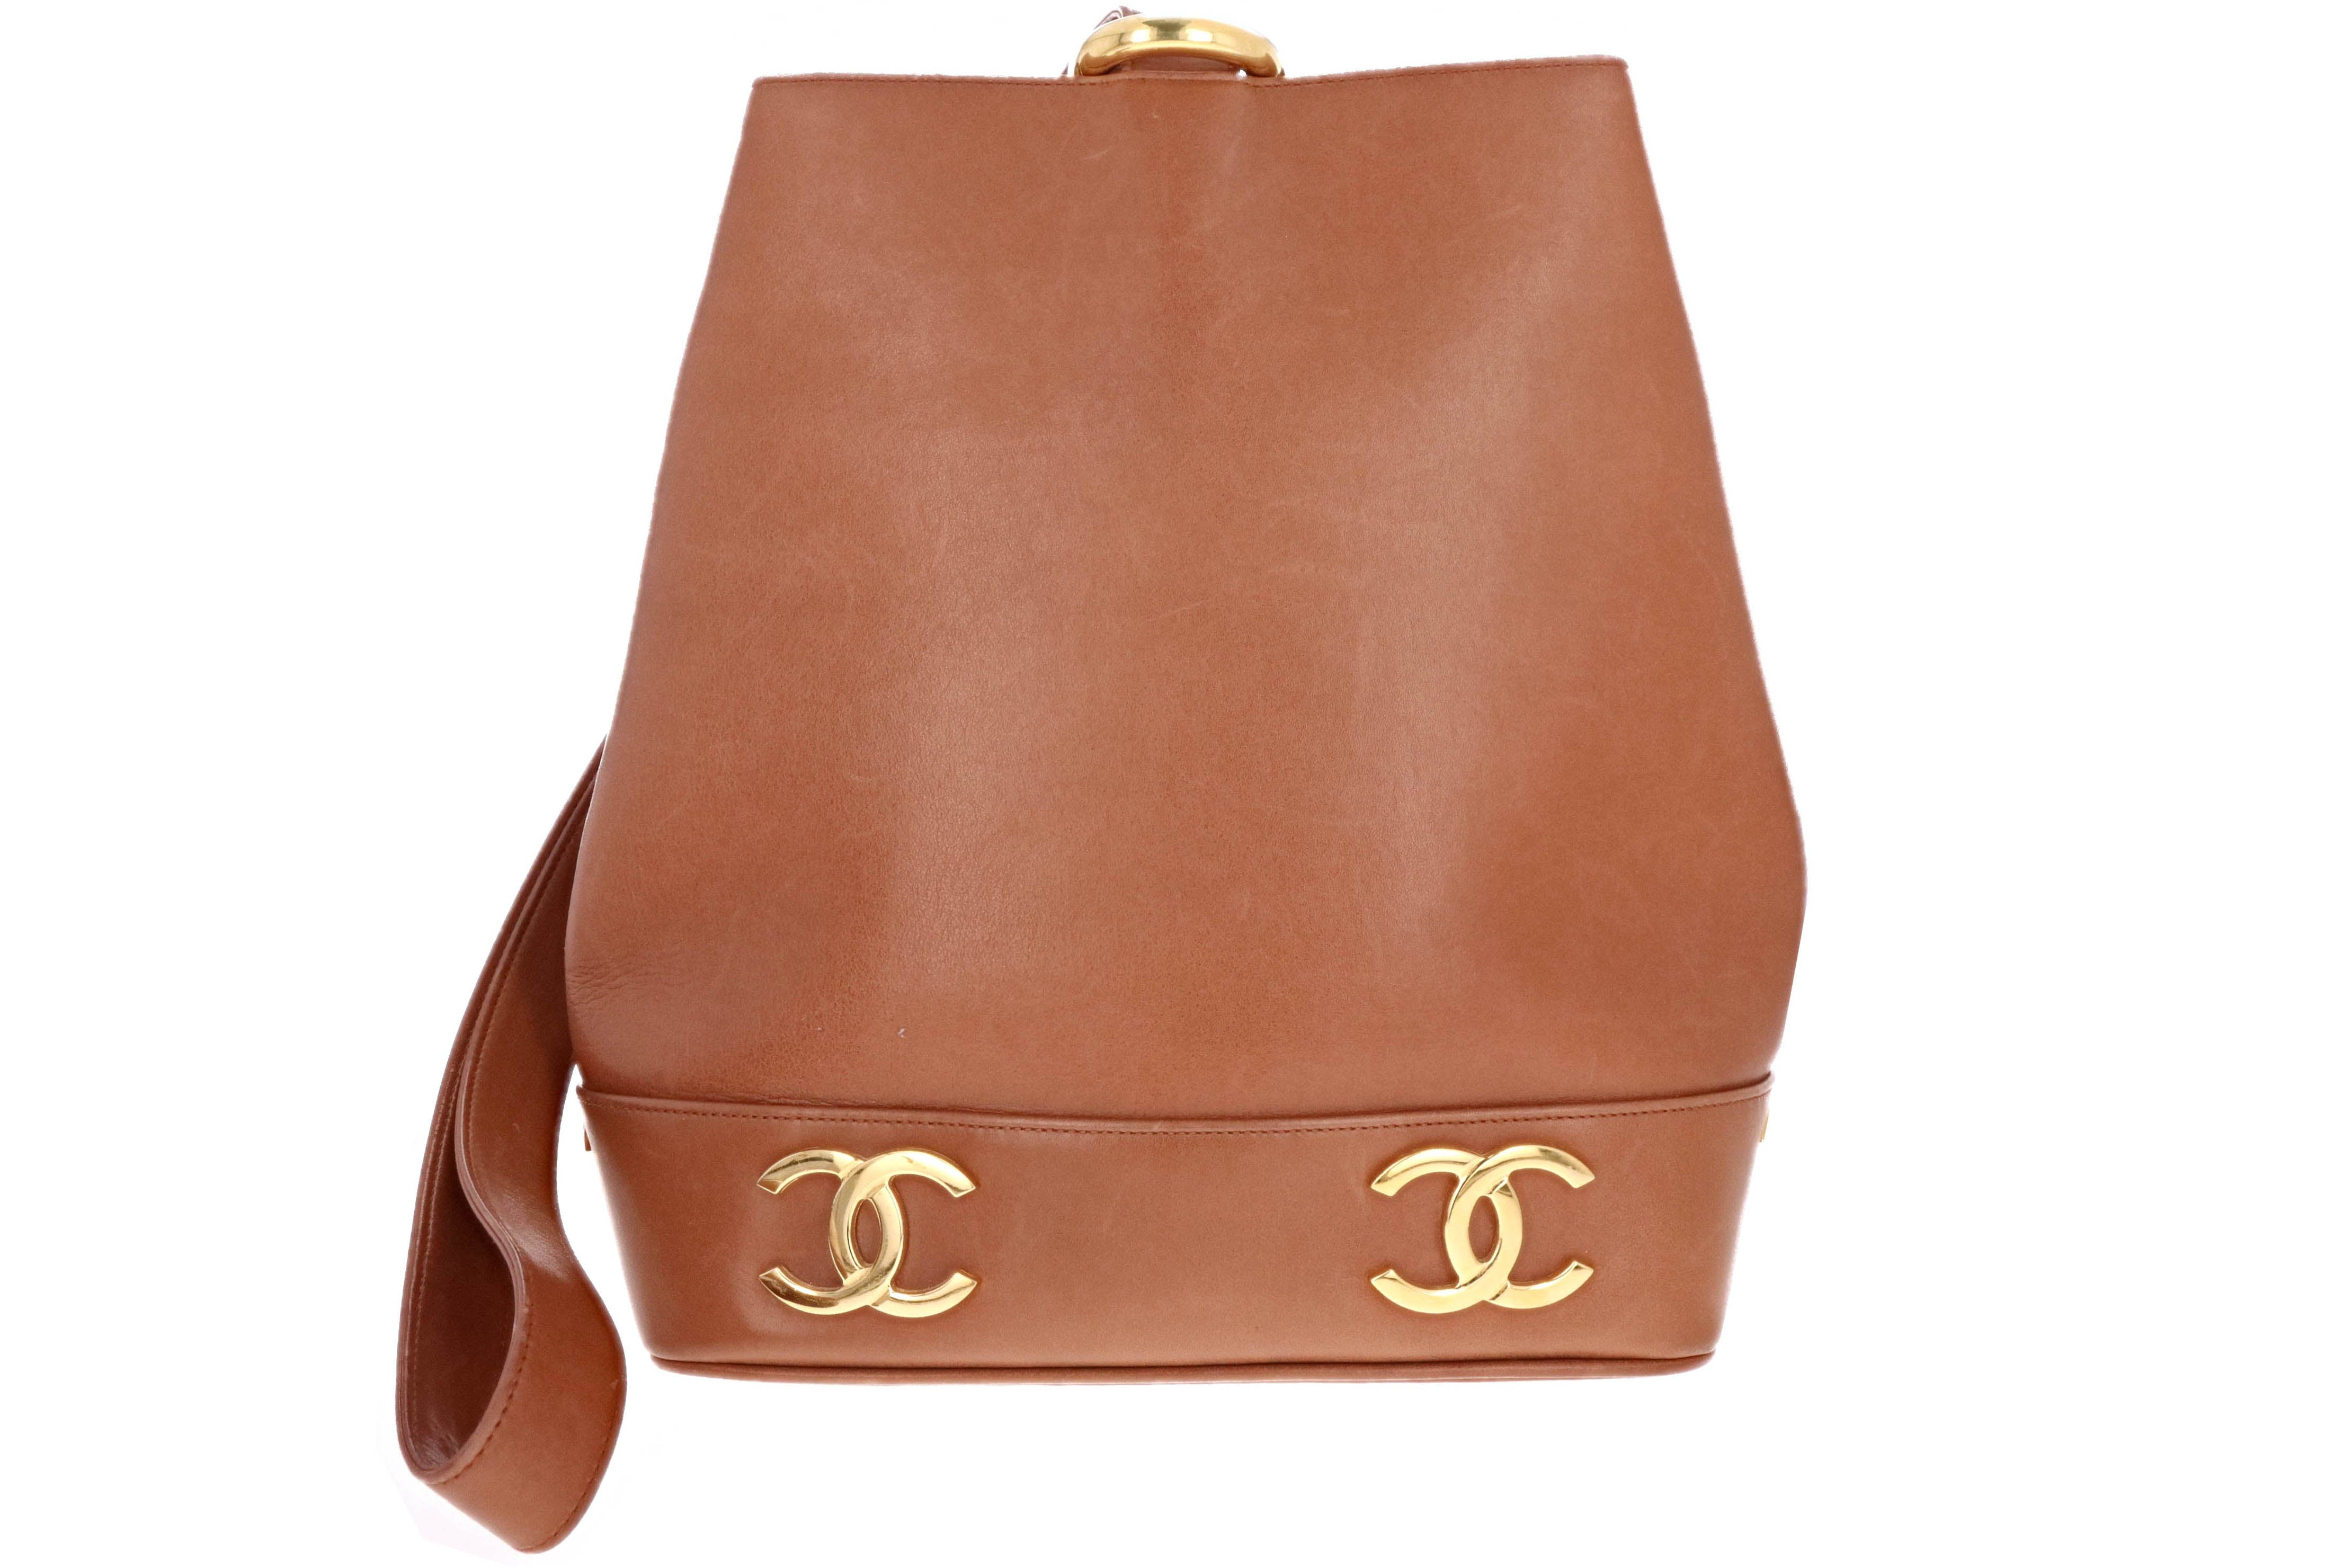 Chanel Rare Vintage Logo Bucket Bag Caramel Color – QUEEN MAY